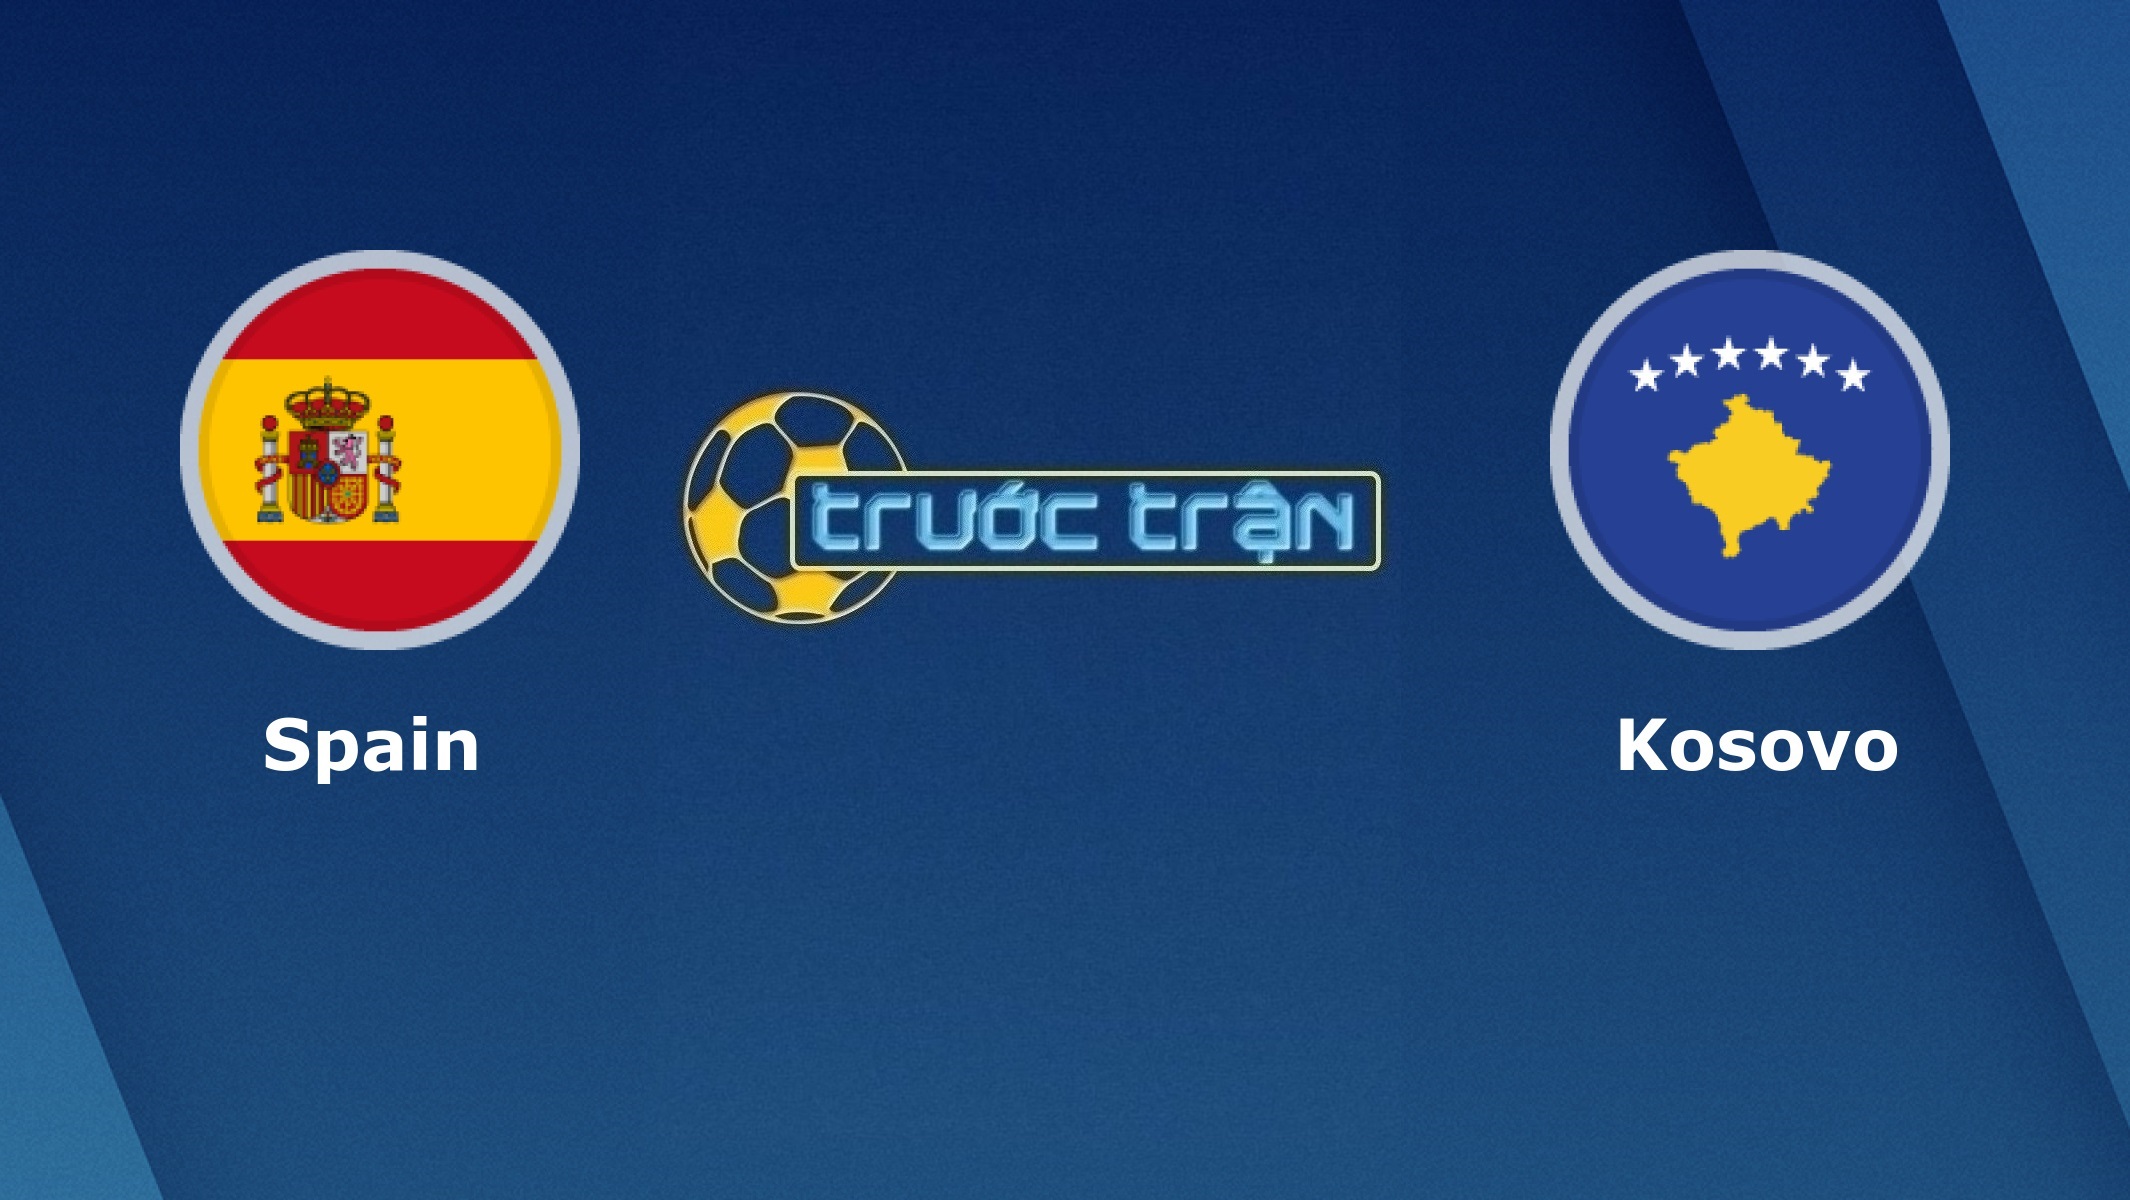 Tây Ban Nha vs Kosovo – Tip kèo bóng đá hôm nay – 01h45 01/04/2021